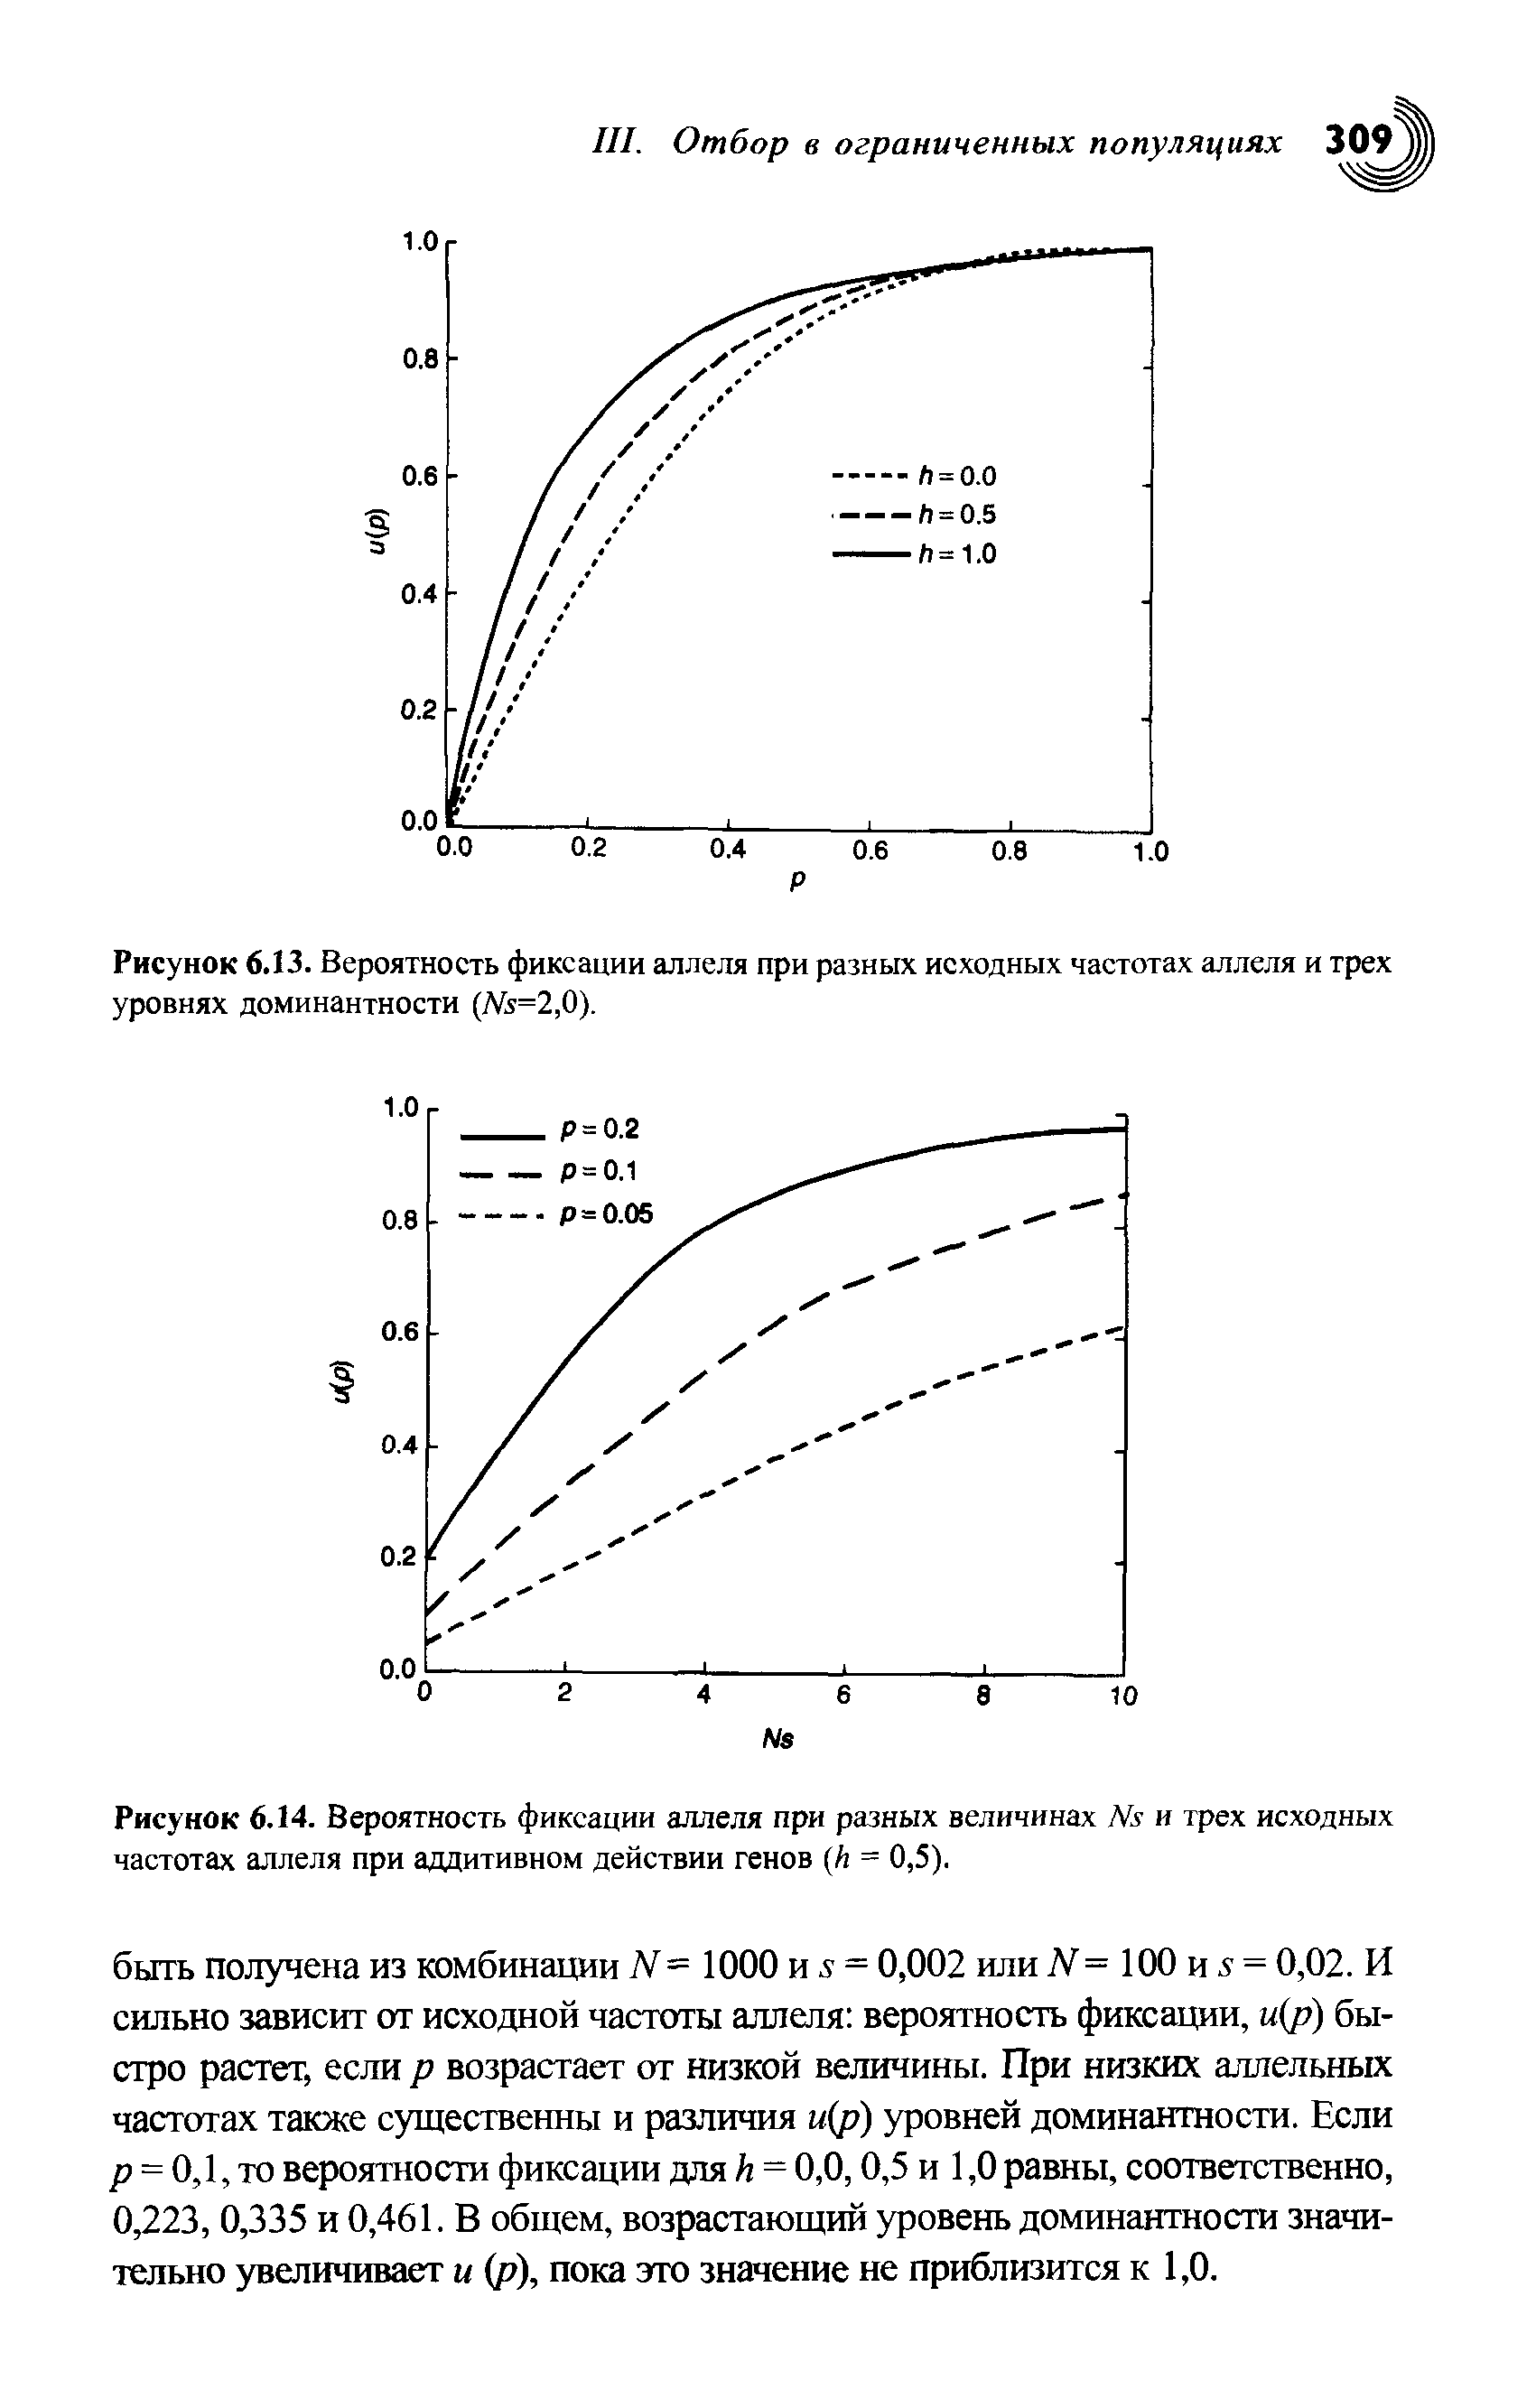 Рисунок 6.14. Вероятность фиксации аллеля при разных величинах № и трех исходных частотах аллеля при аддитивном действии генов (Л = 0,5).